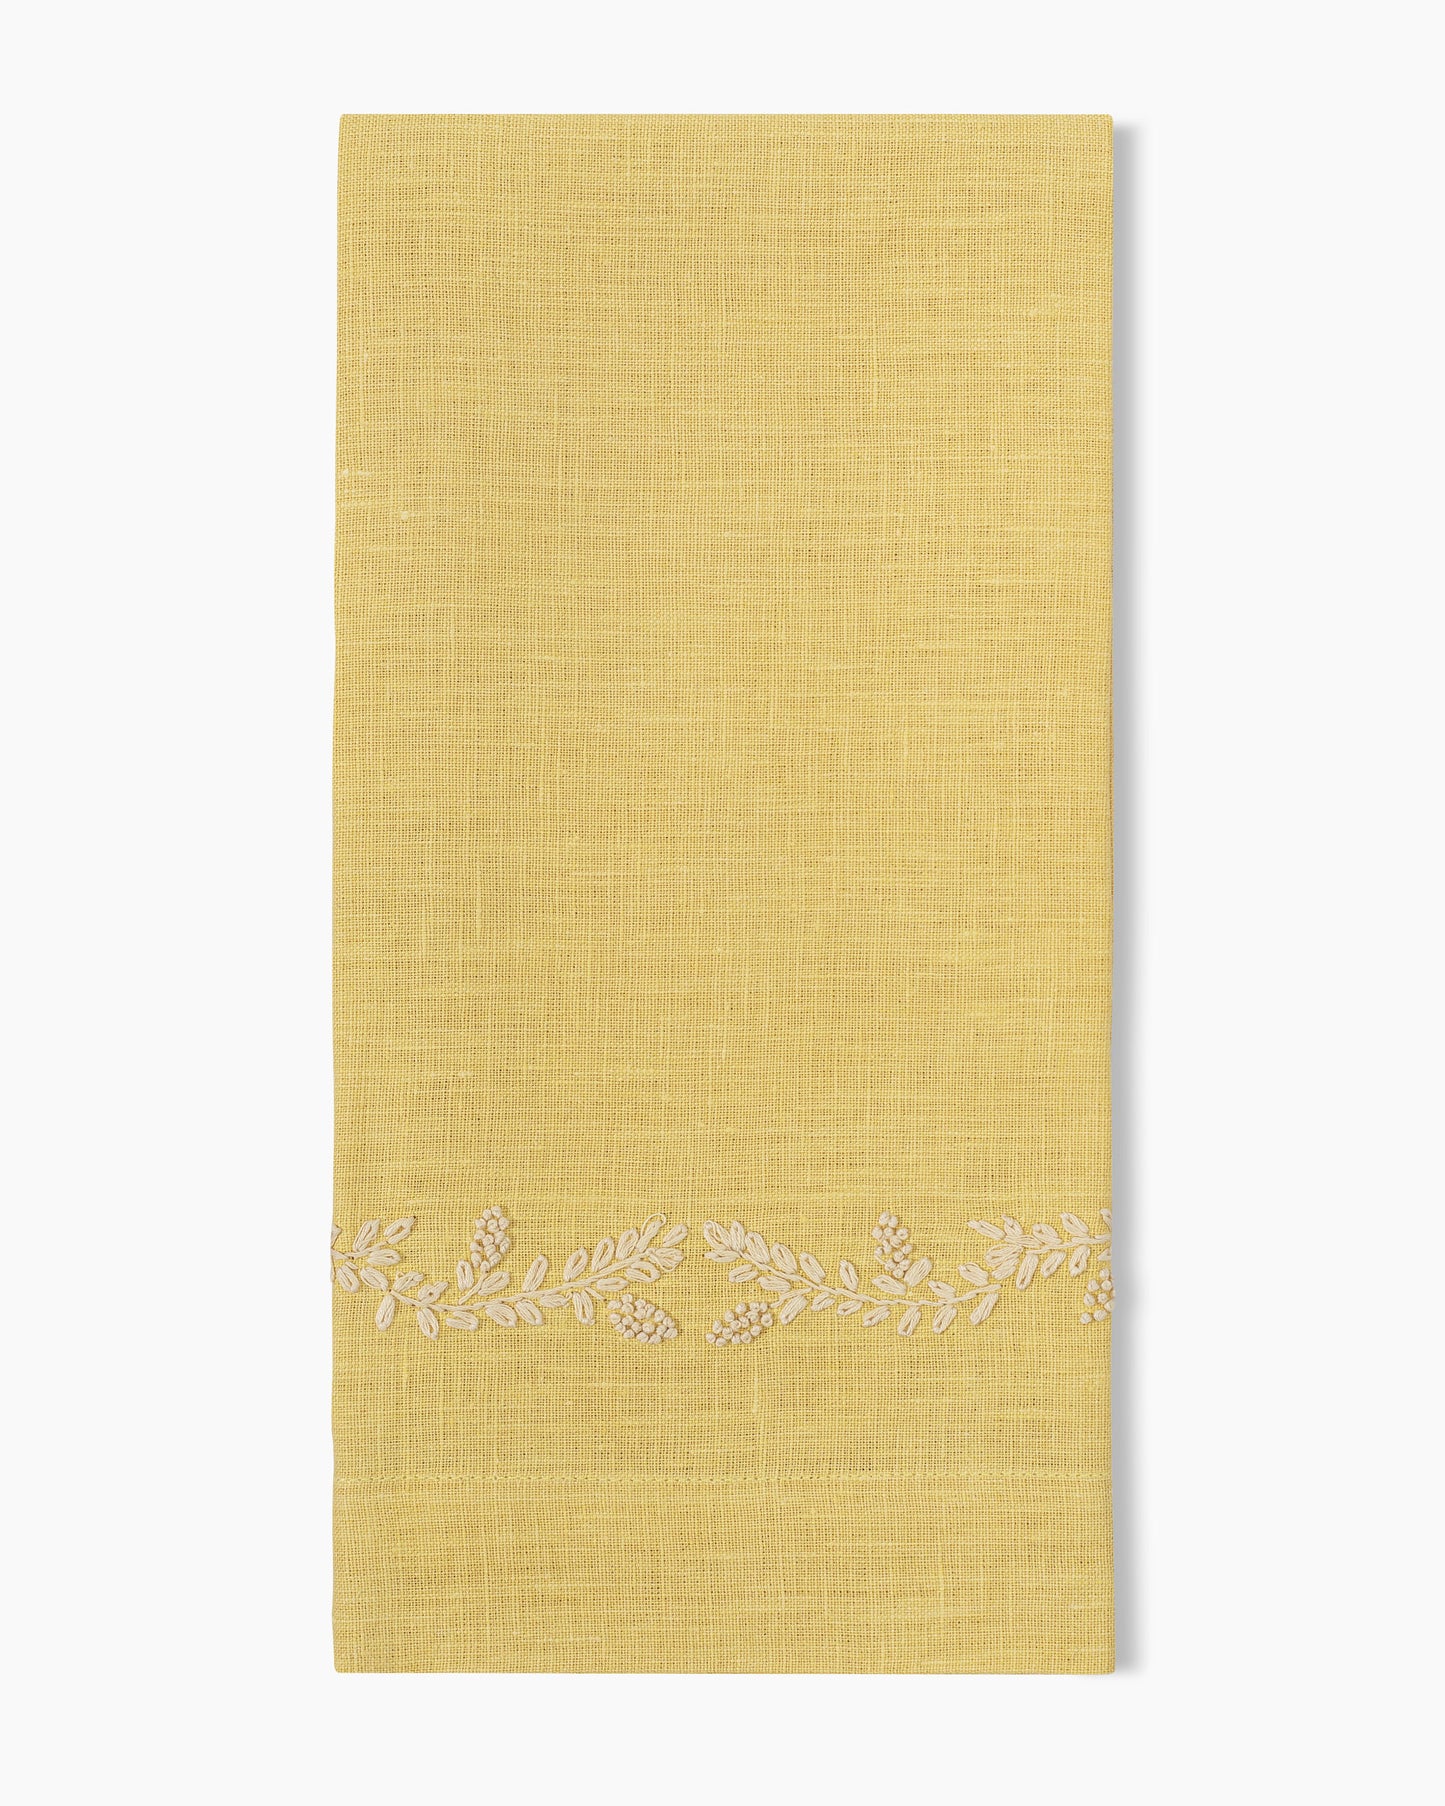 Prism Vine Linen Hand Towel - 13 Colors